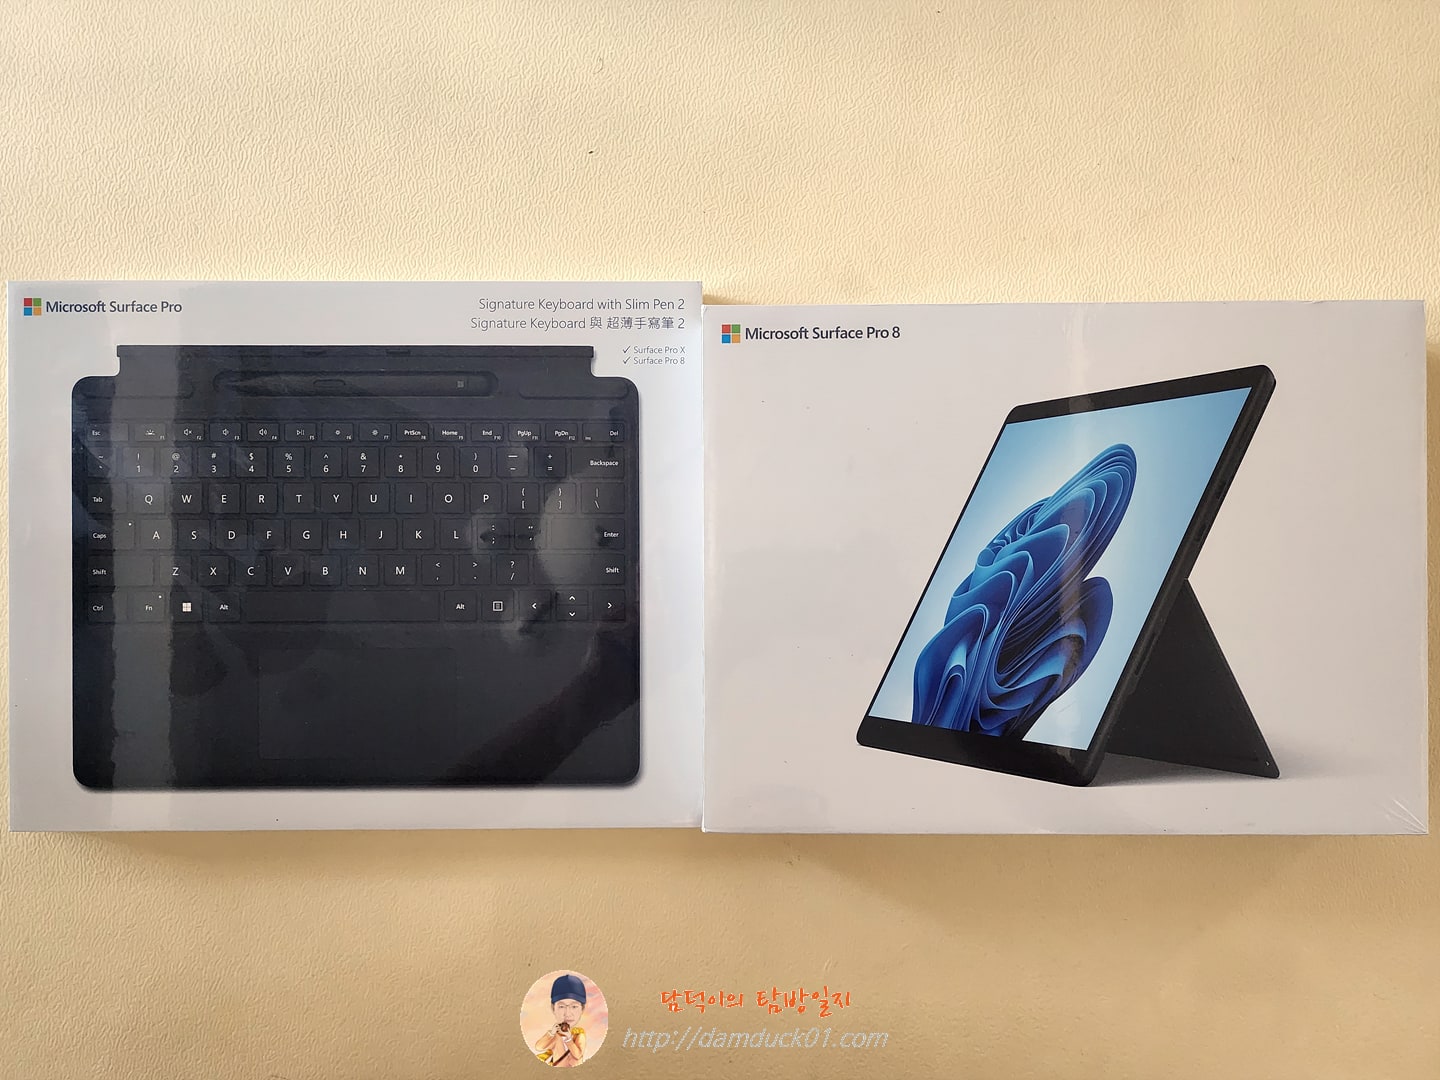 Signature Mechanical Keyboard + Slim Pen 2 + Microsoft Surface Pro 8